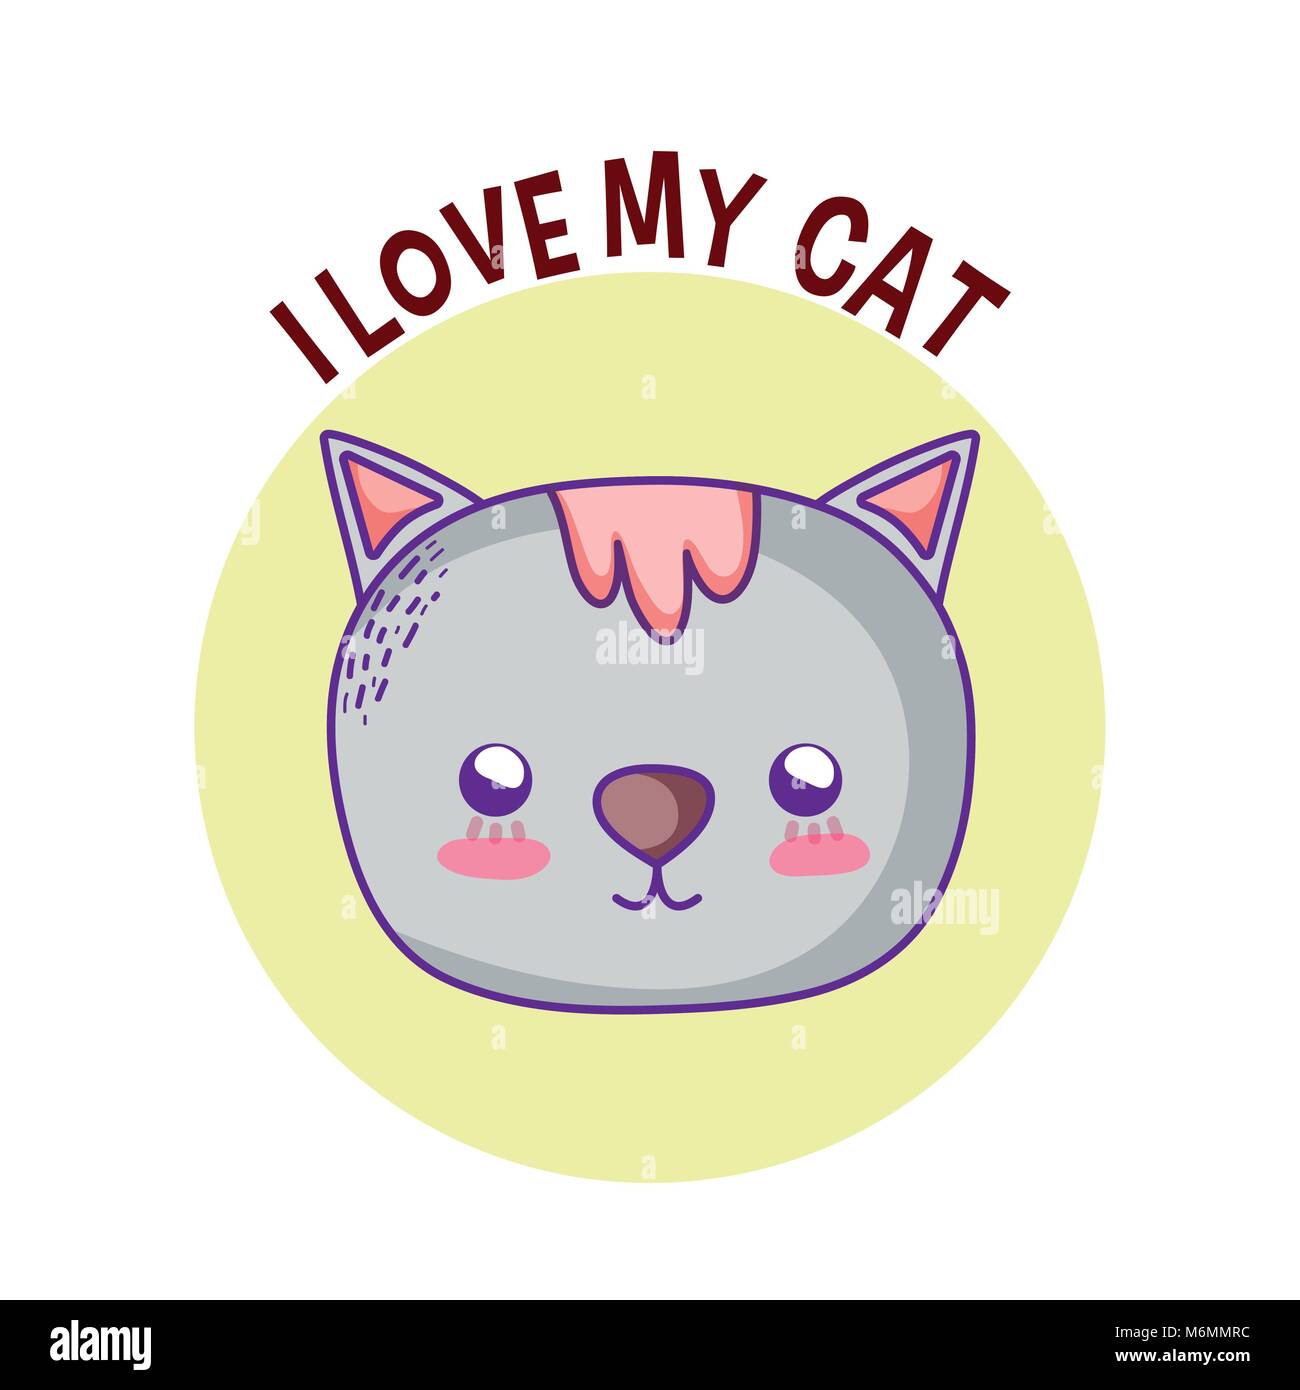 Ich liebe meine Katze Pet-cartoon Vector Illustration graphic design  Stock-Vektorgrafik - Alamy